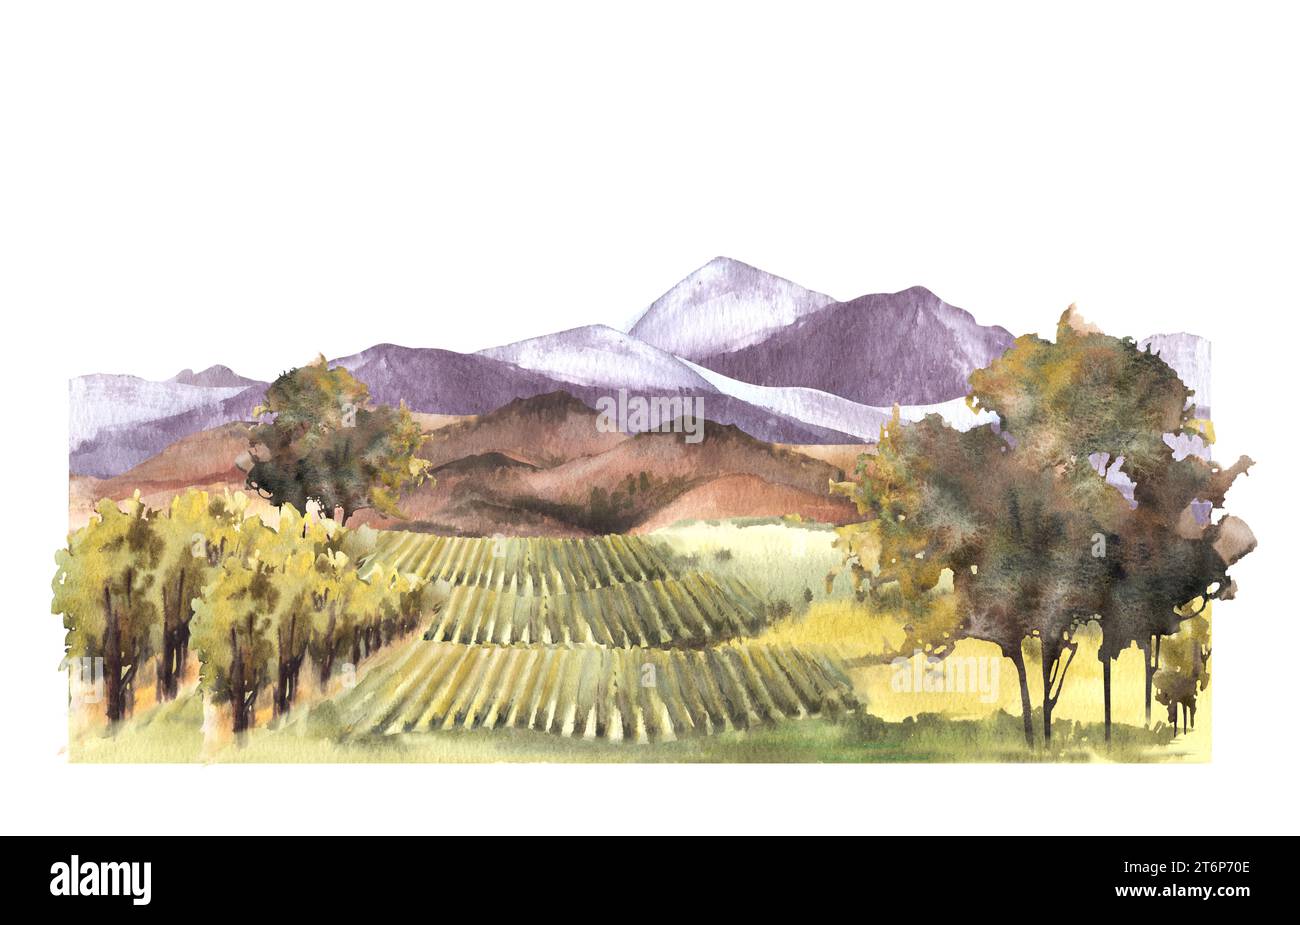 Paysage aquarelle avec champs de raisin, vignes, buissons, arbres, plante de raisin. collines et montagnes. Paysage rural, ferme viticole. Dessin à la main Banque D'Images